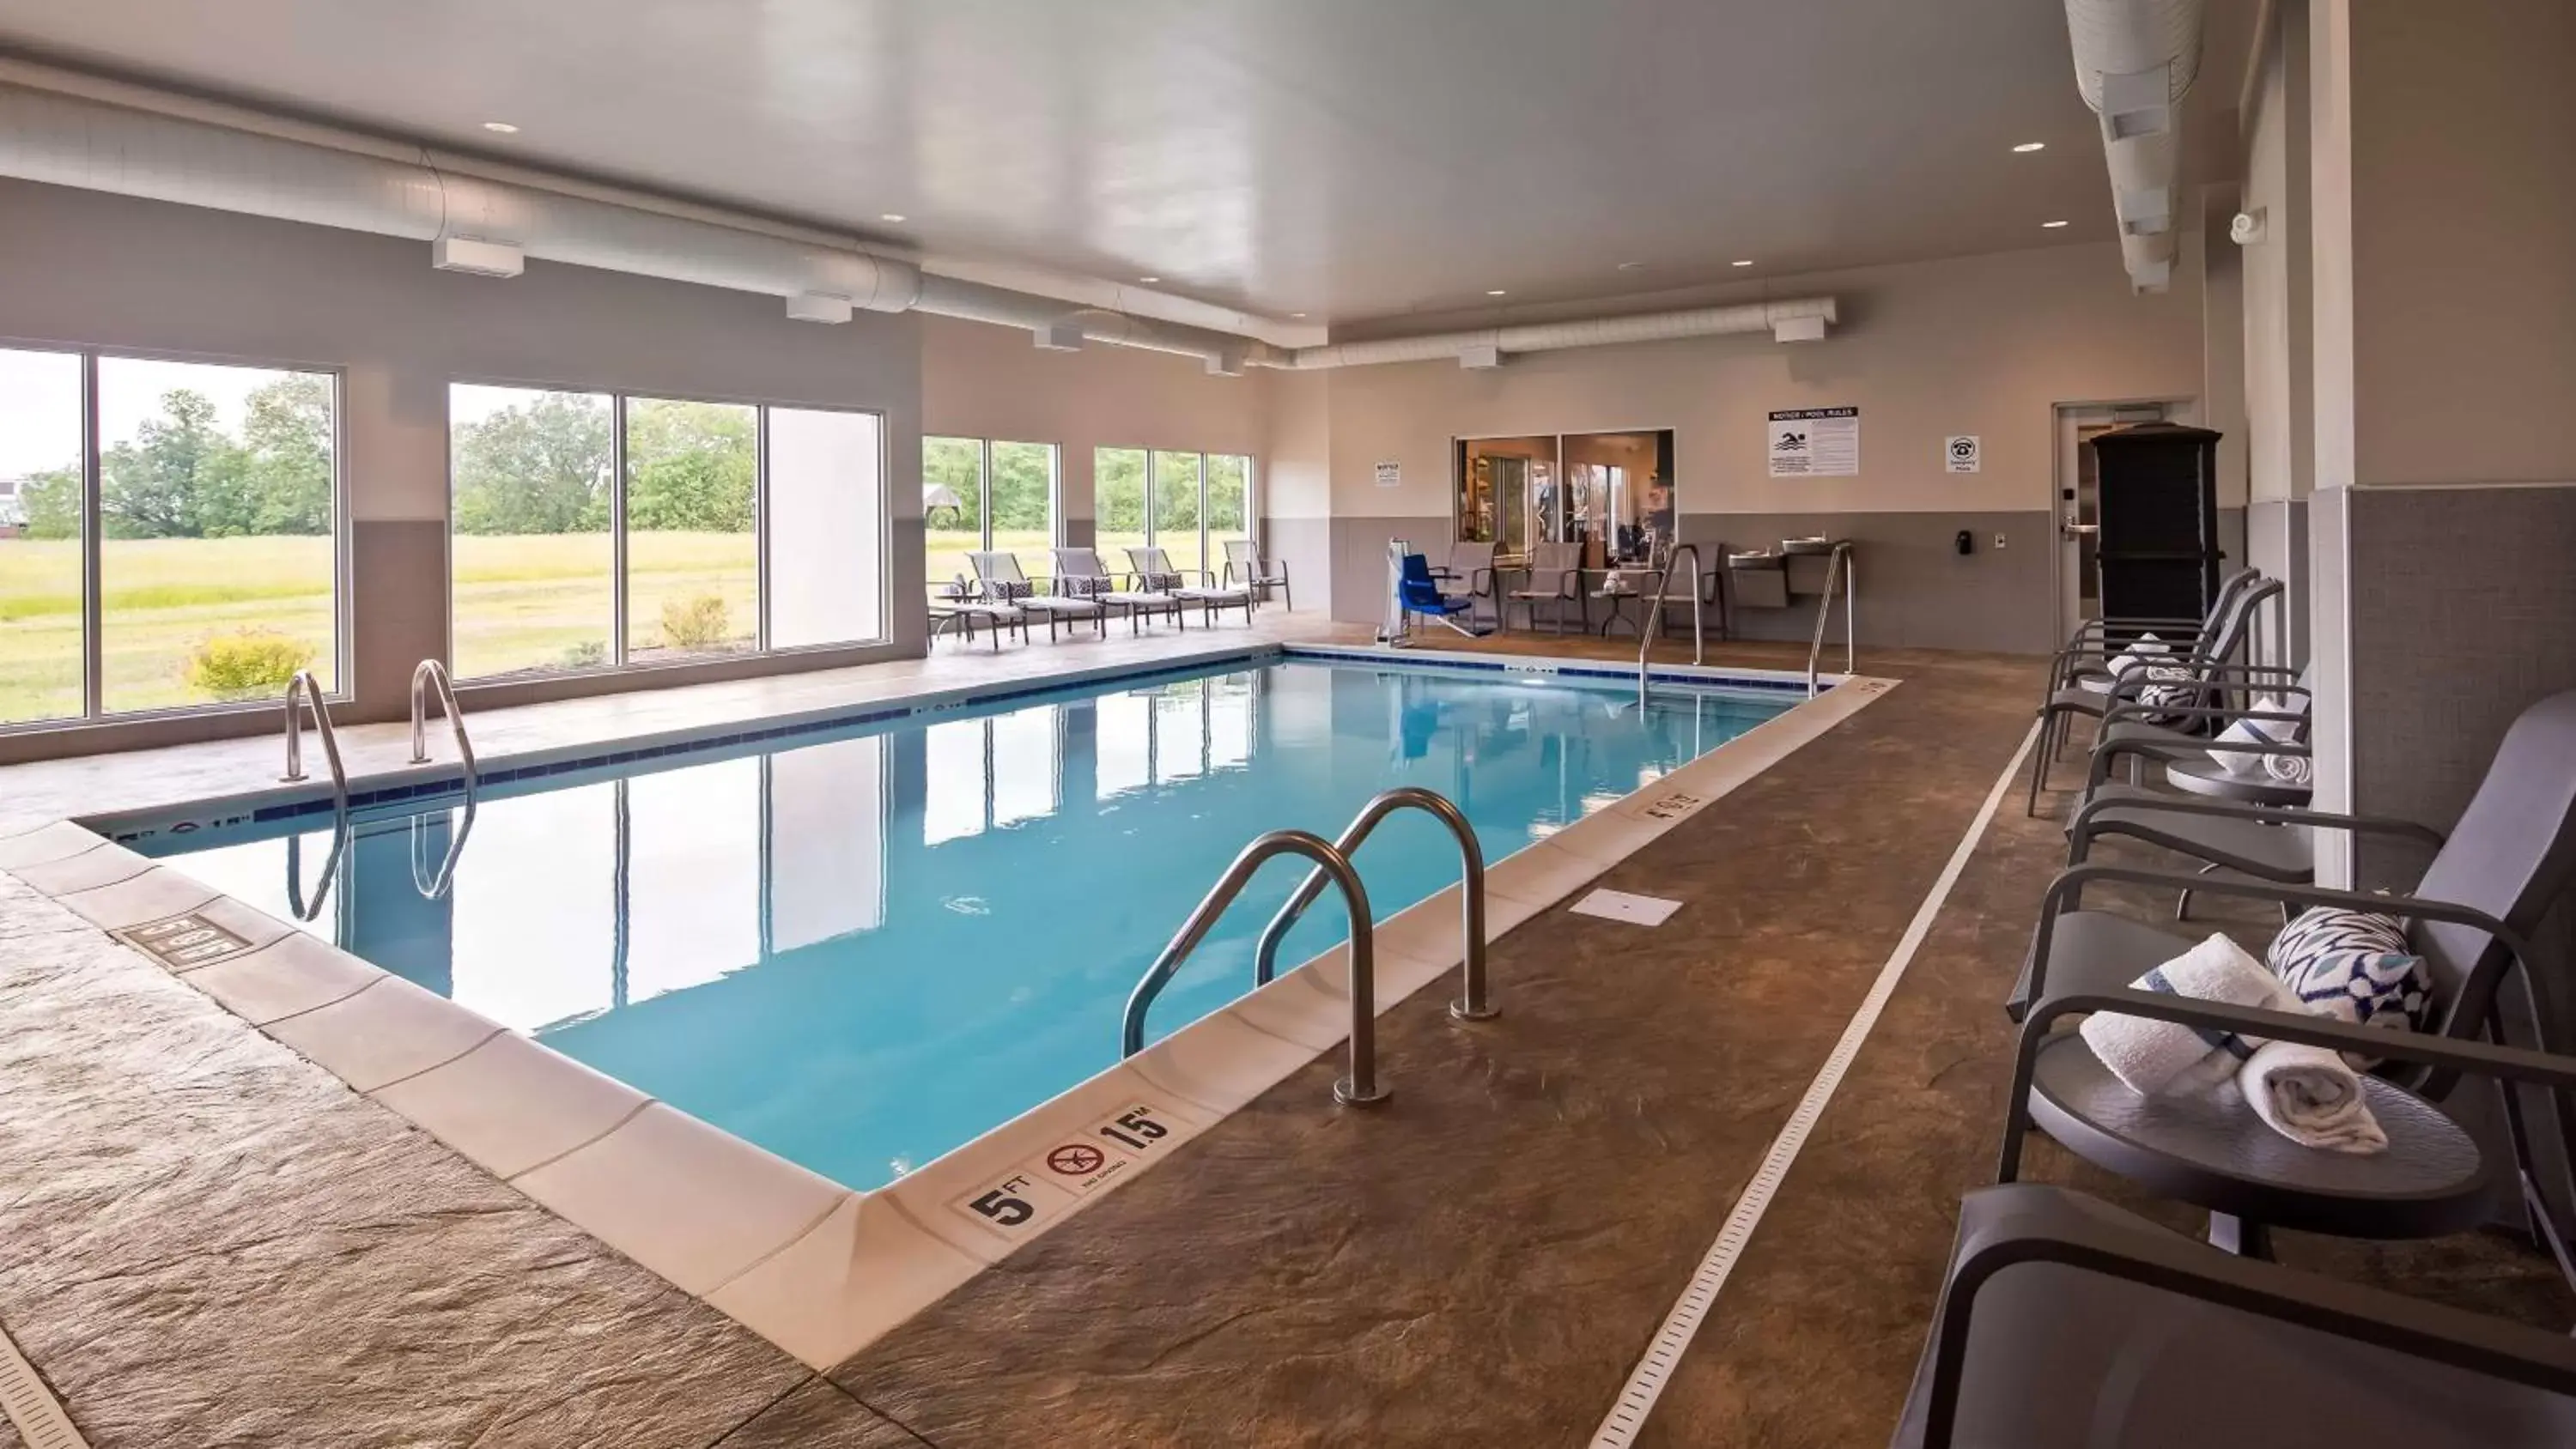 On site, Swimming Pool in Best Western Plus Parkside Inn & Suites